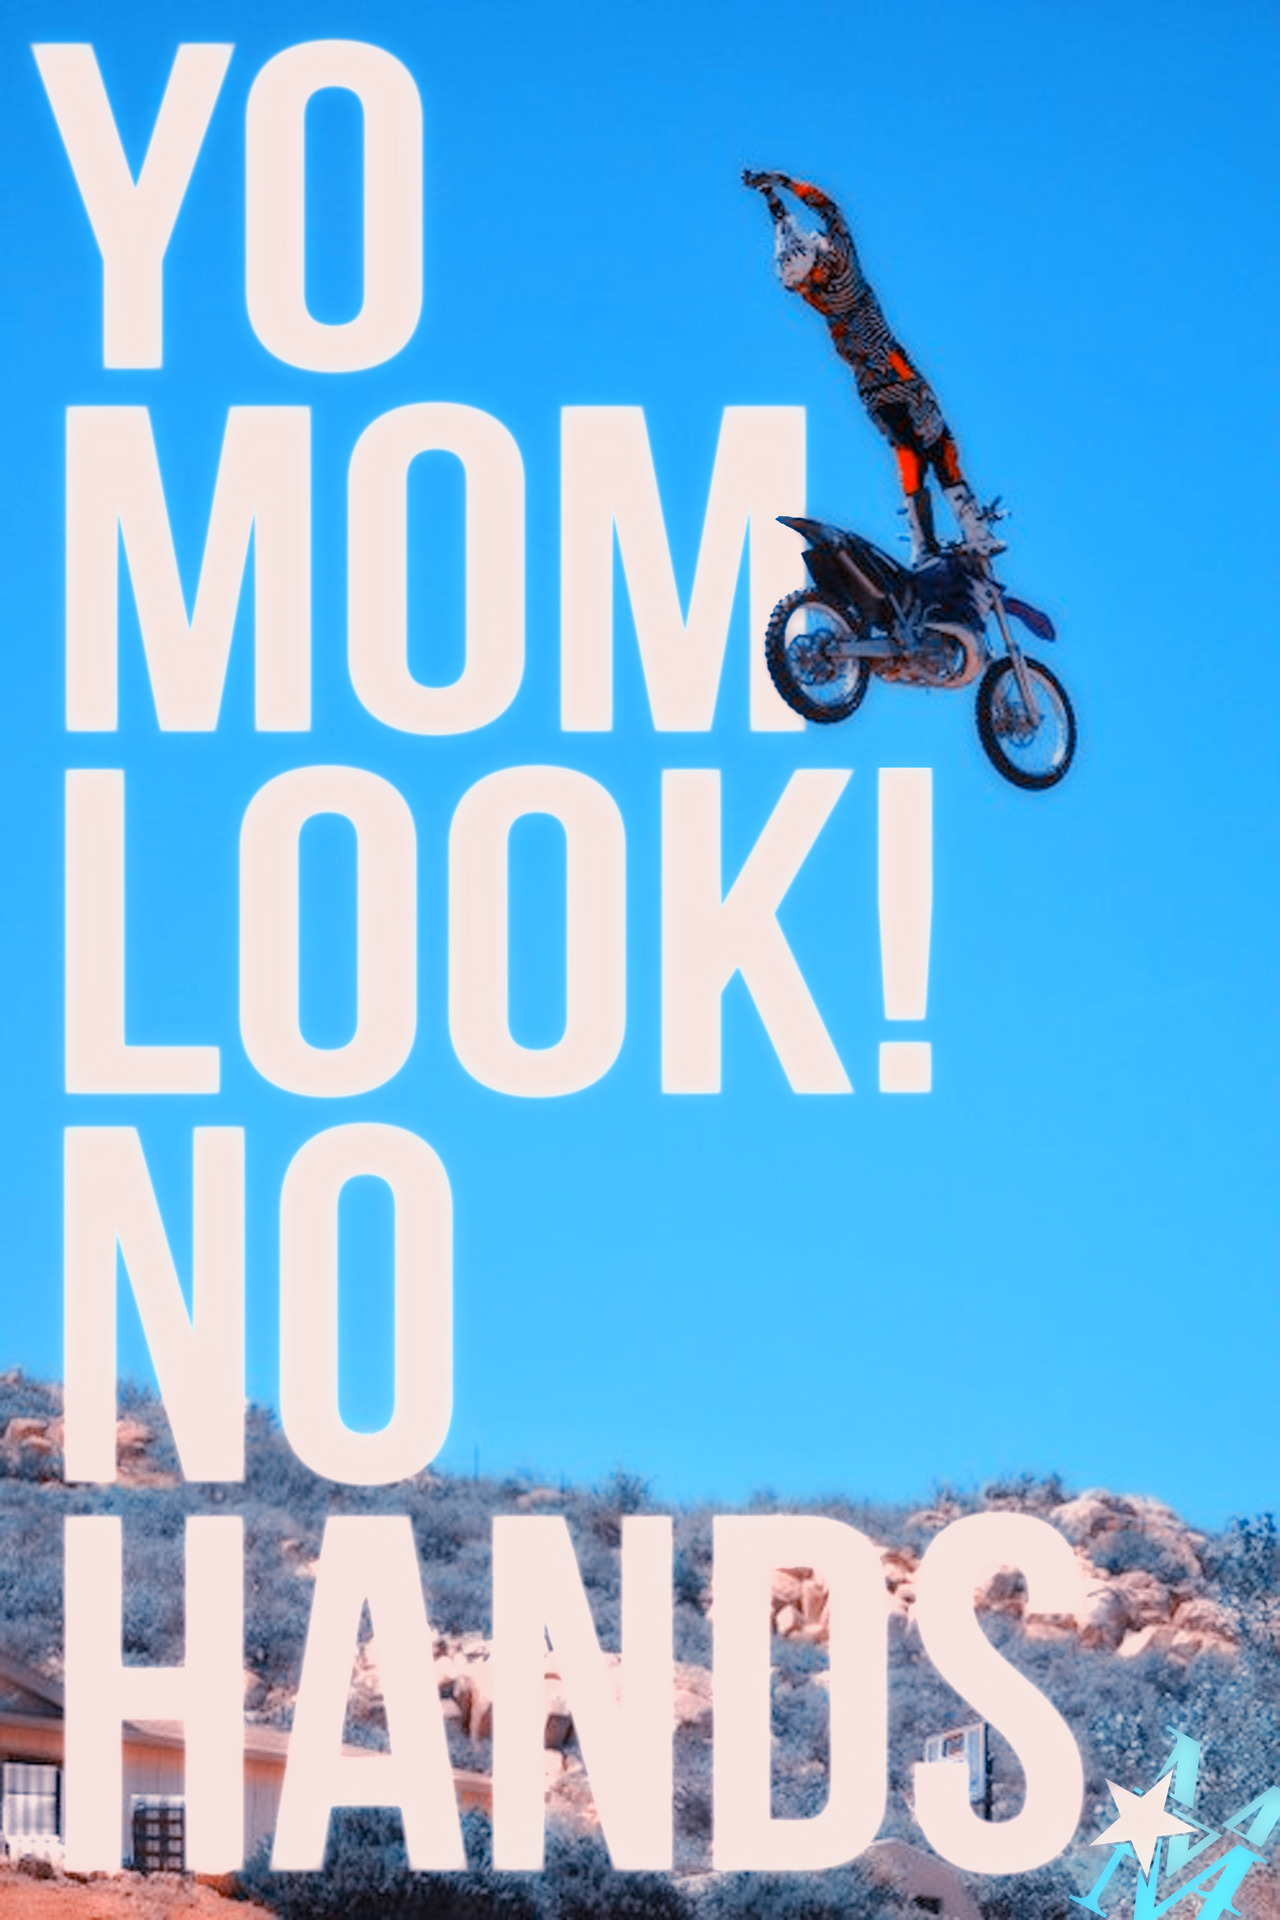 Moto Mom Quotes. QuotesGram